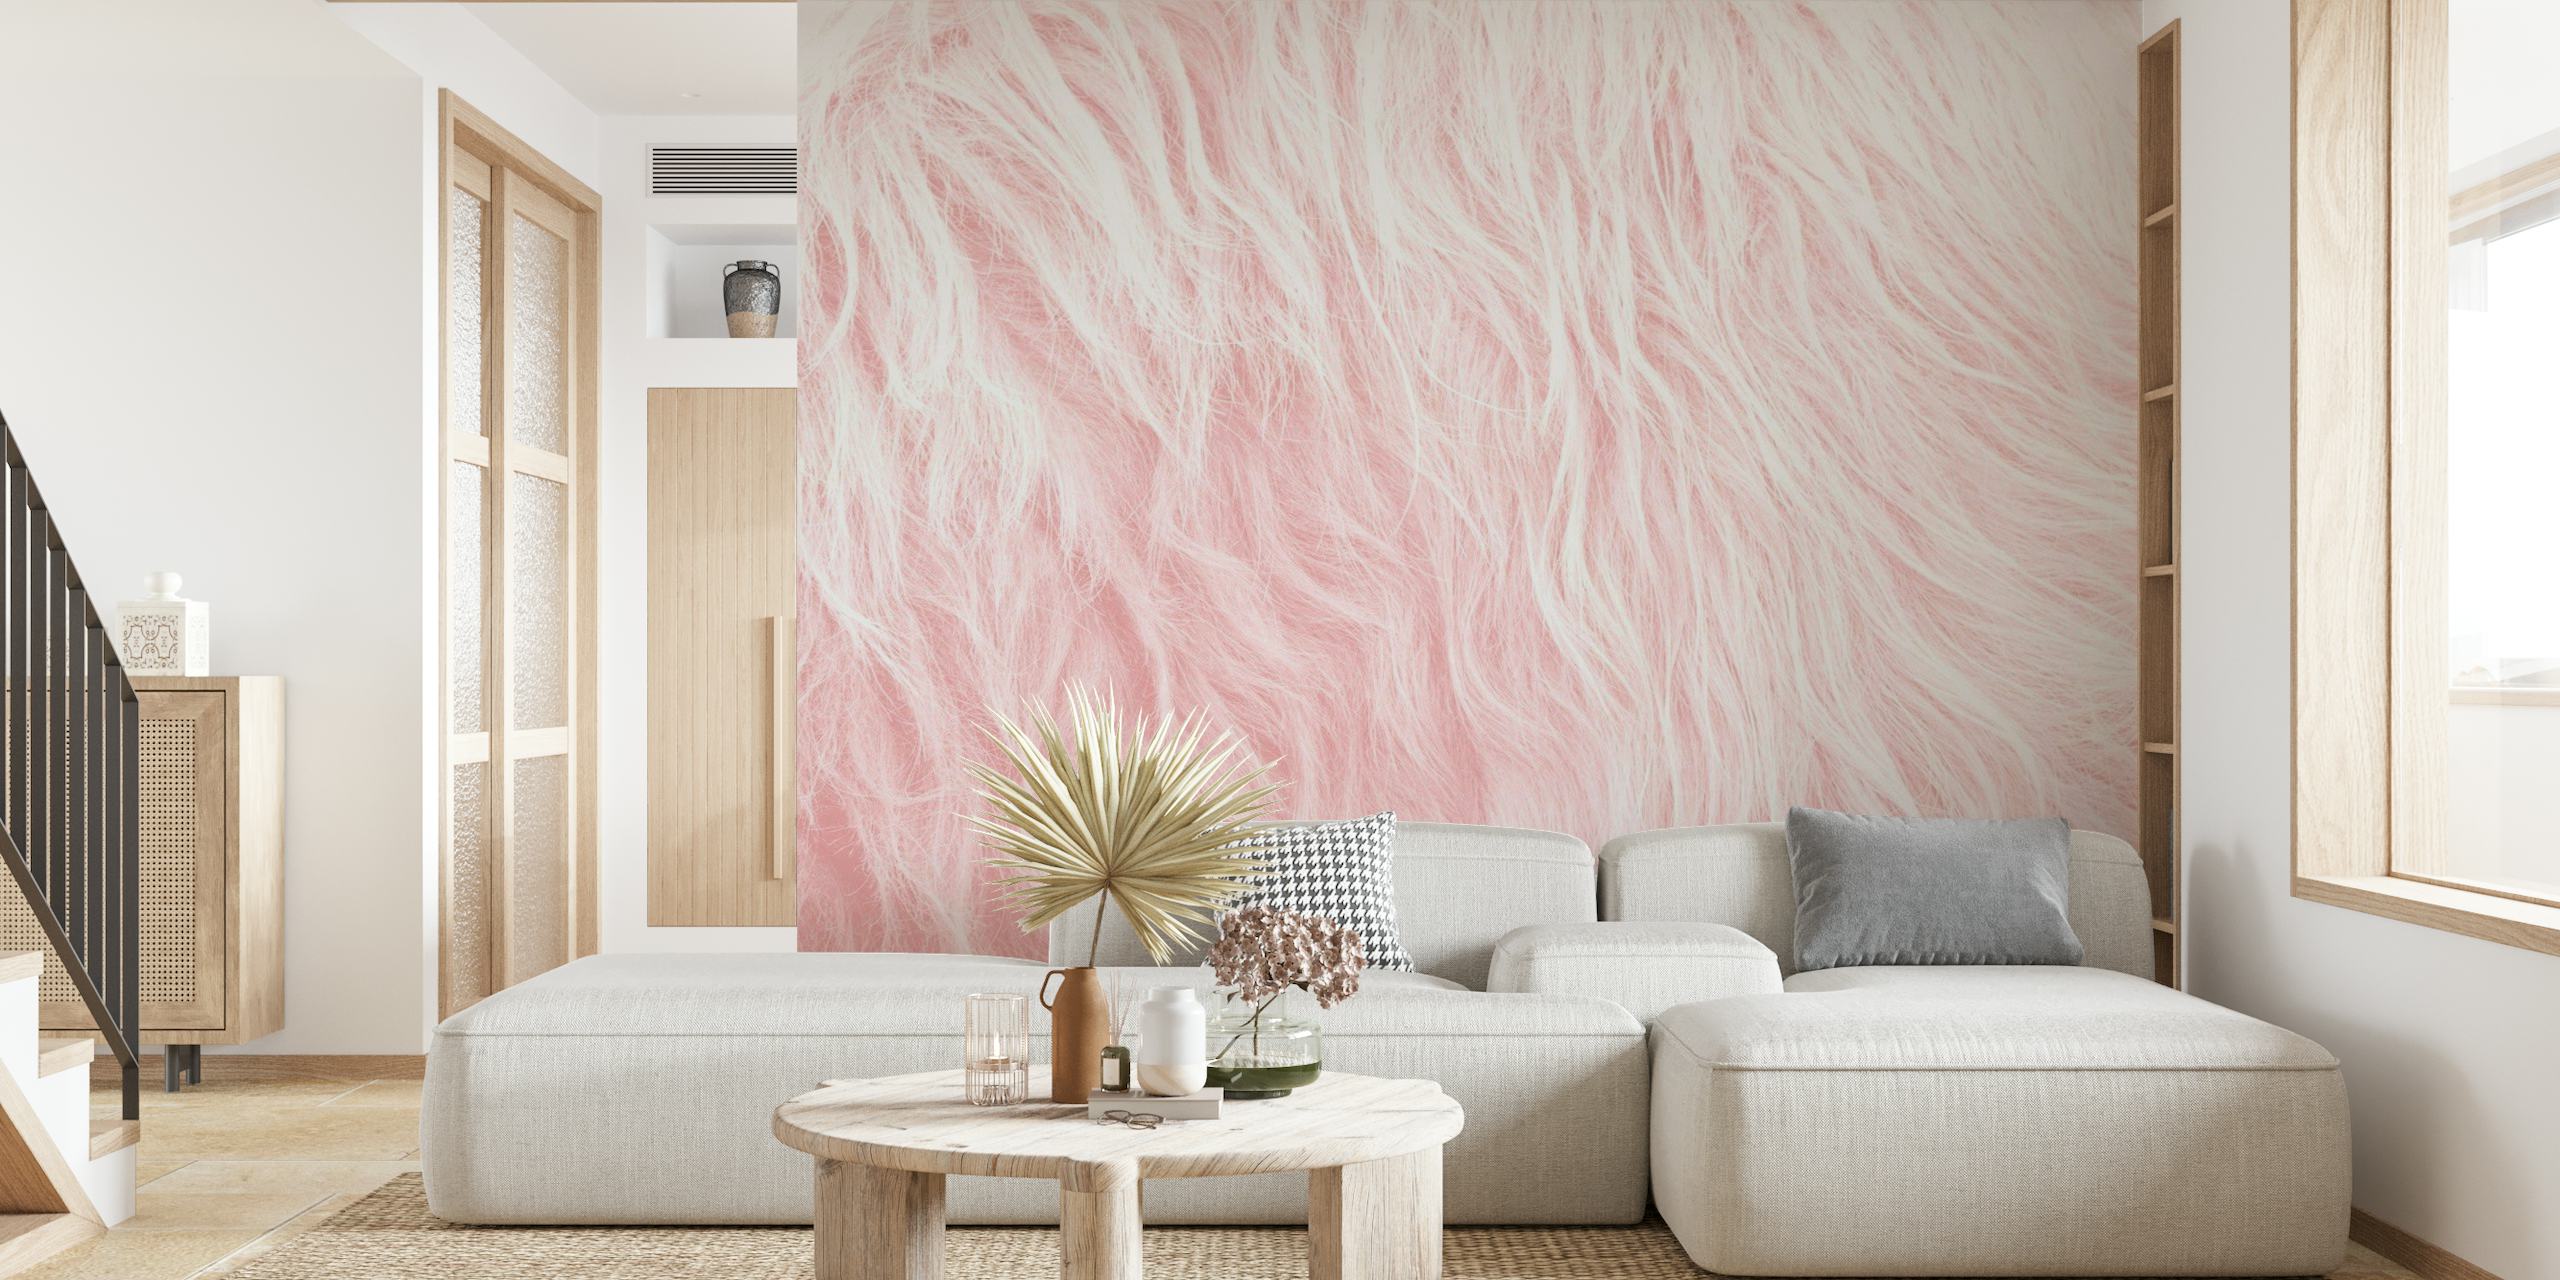 Pink fur wallpaper for bedroom depicting Blush Faux Highland Cow Fur design